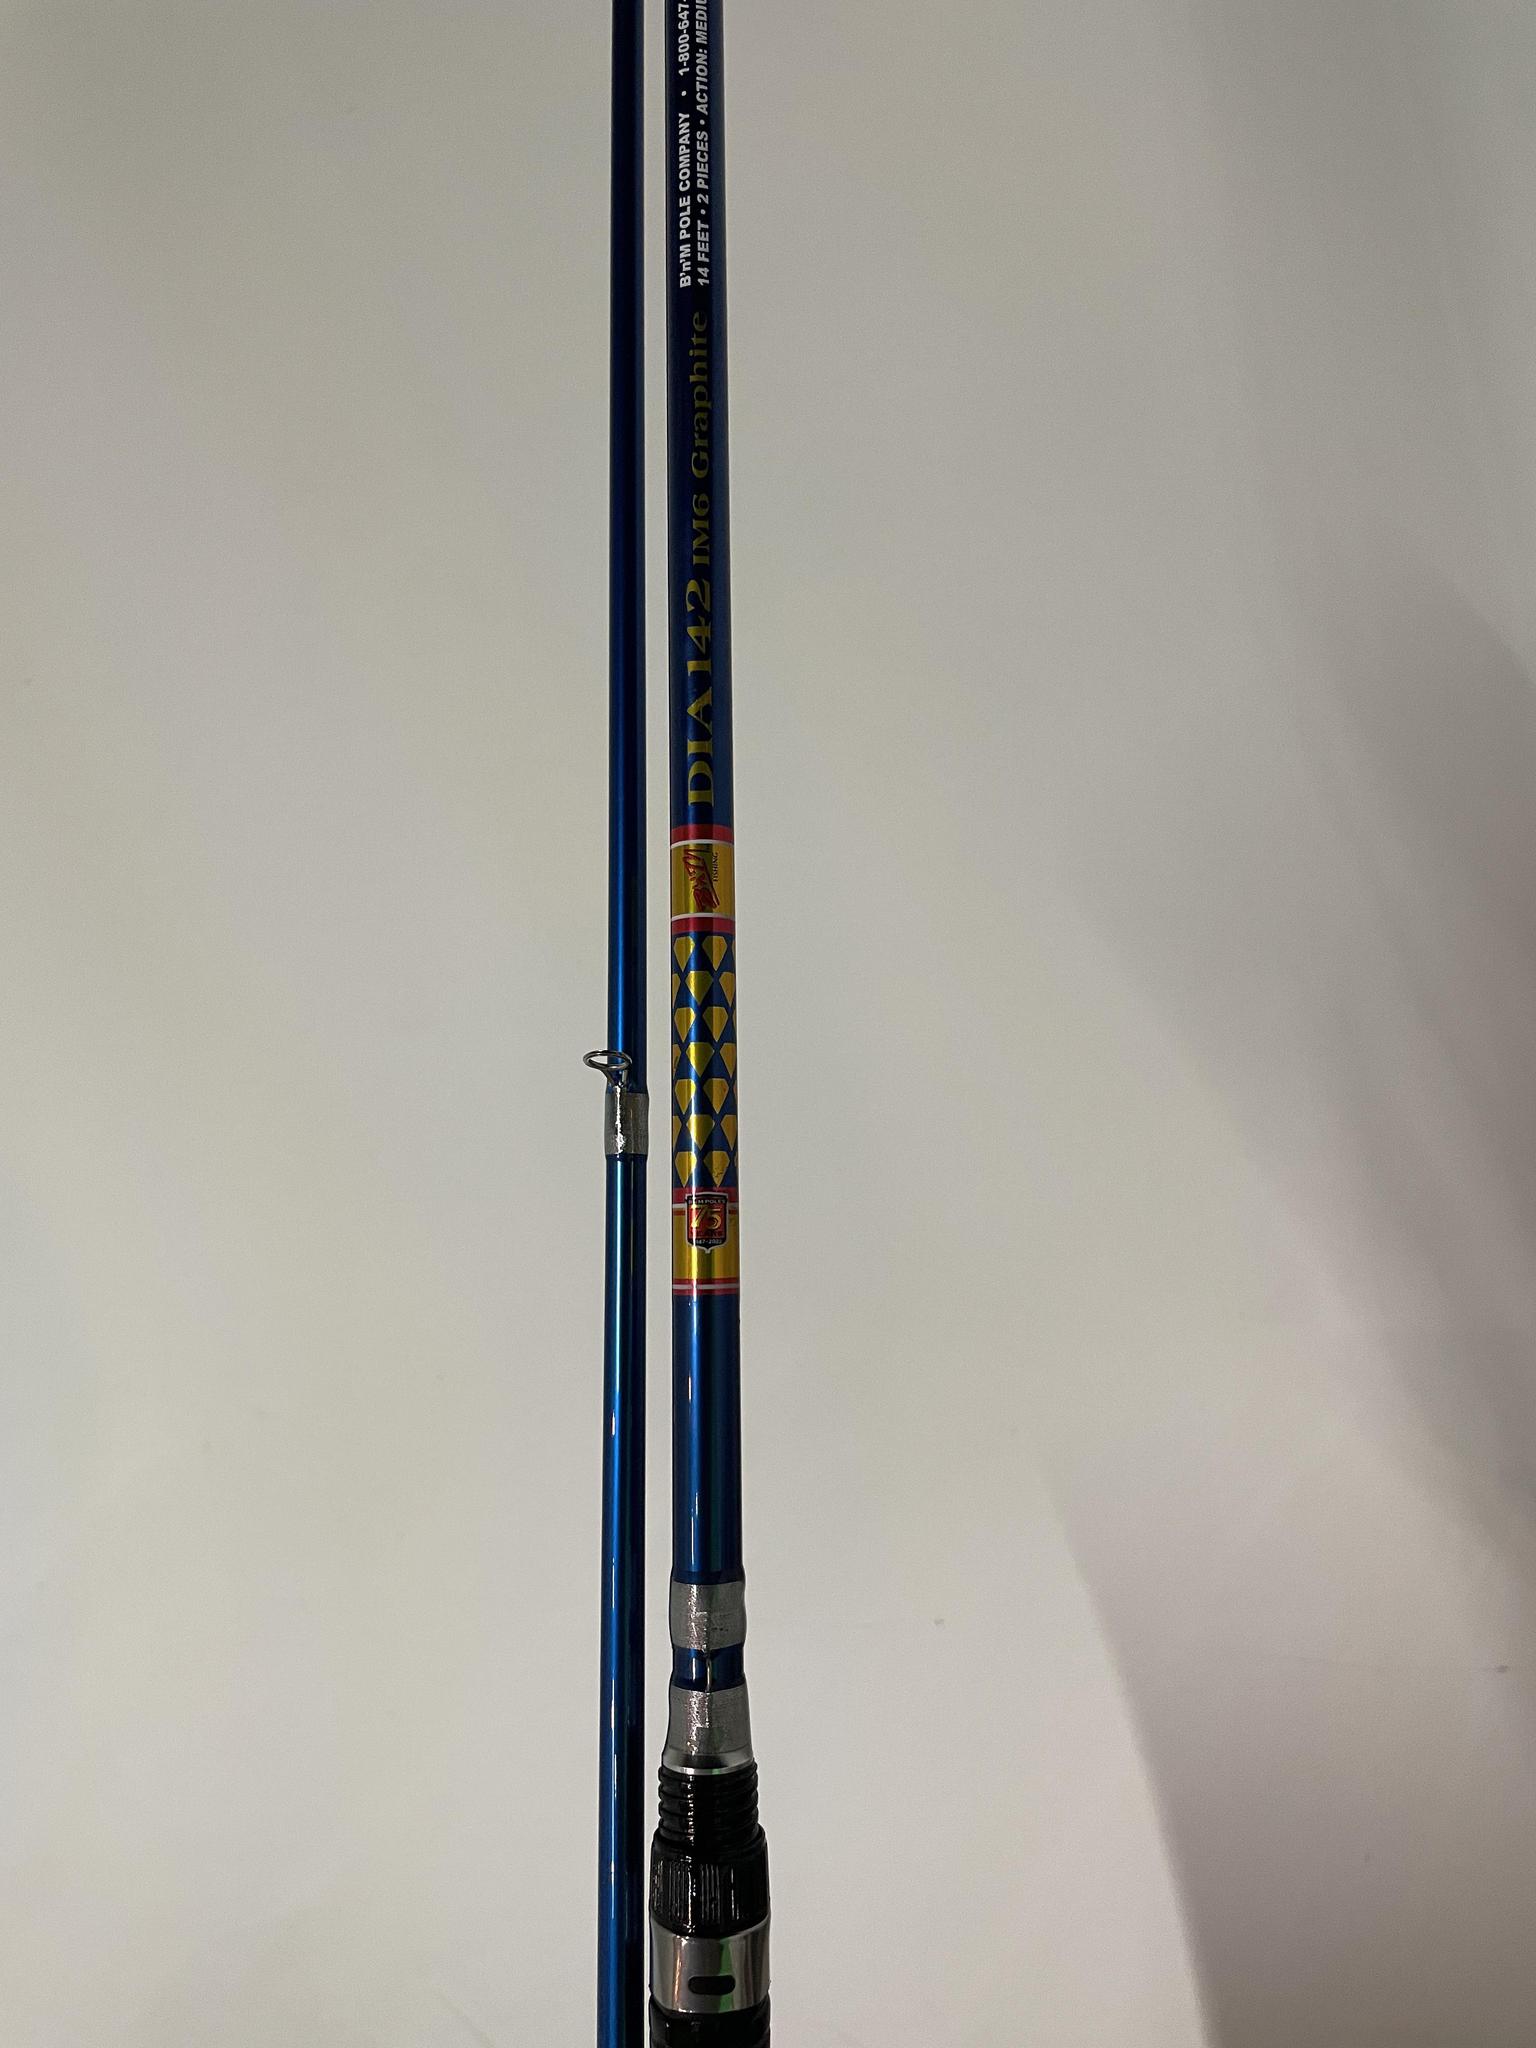 B'n'M Blue Diamond Series 14 ft. Pole